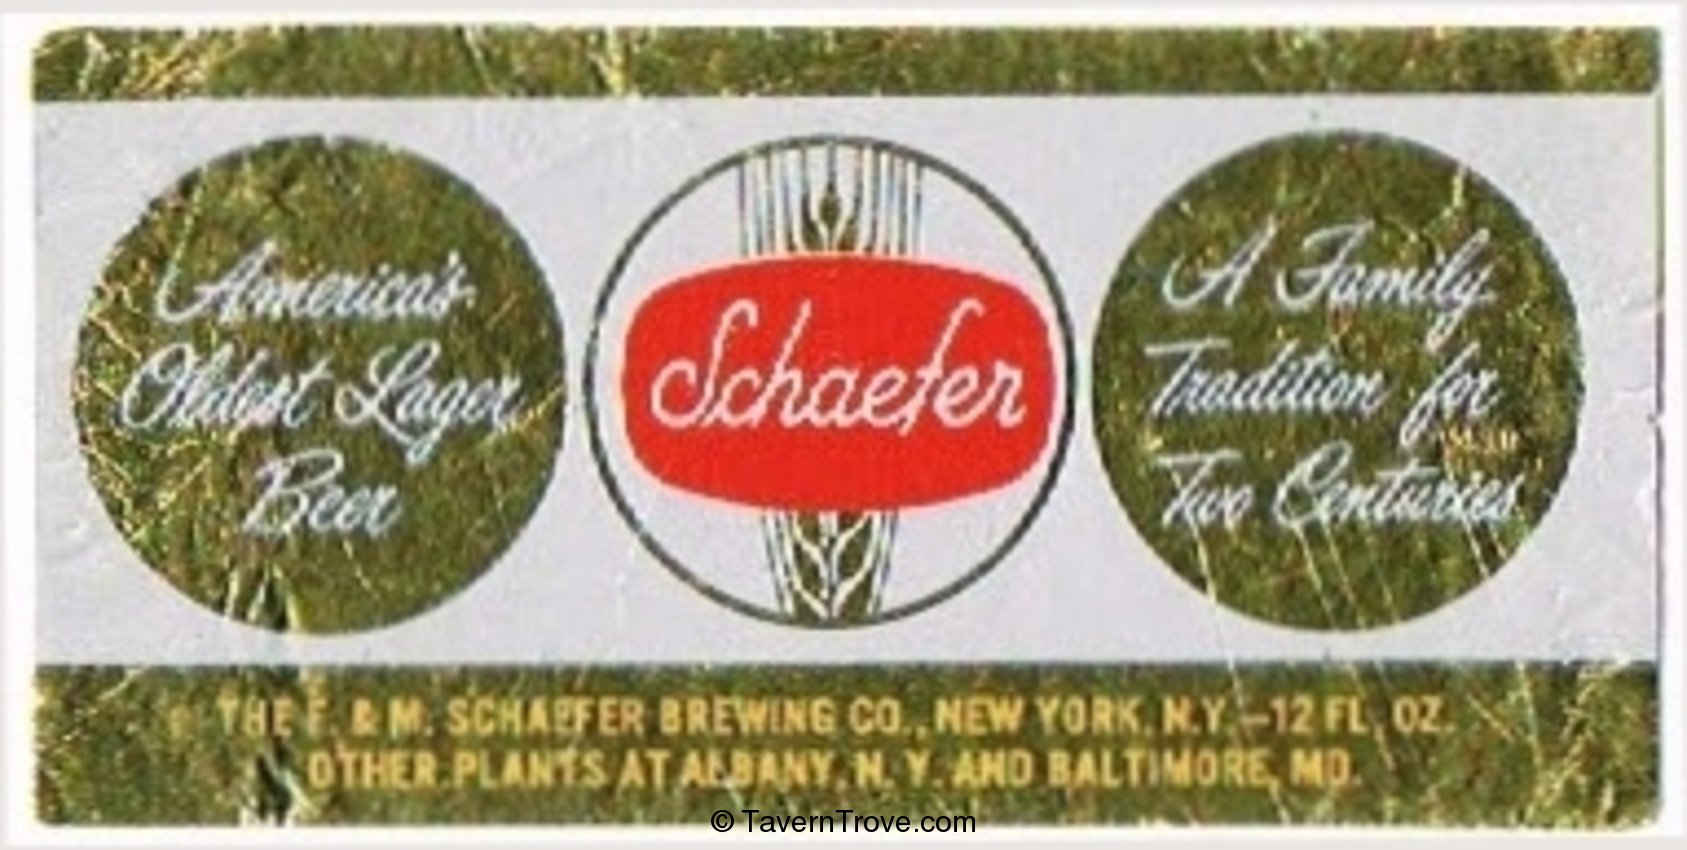 Schaefer Beer